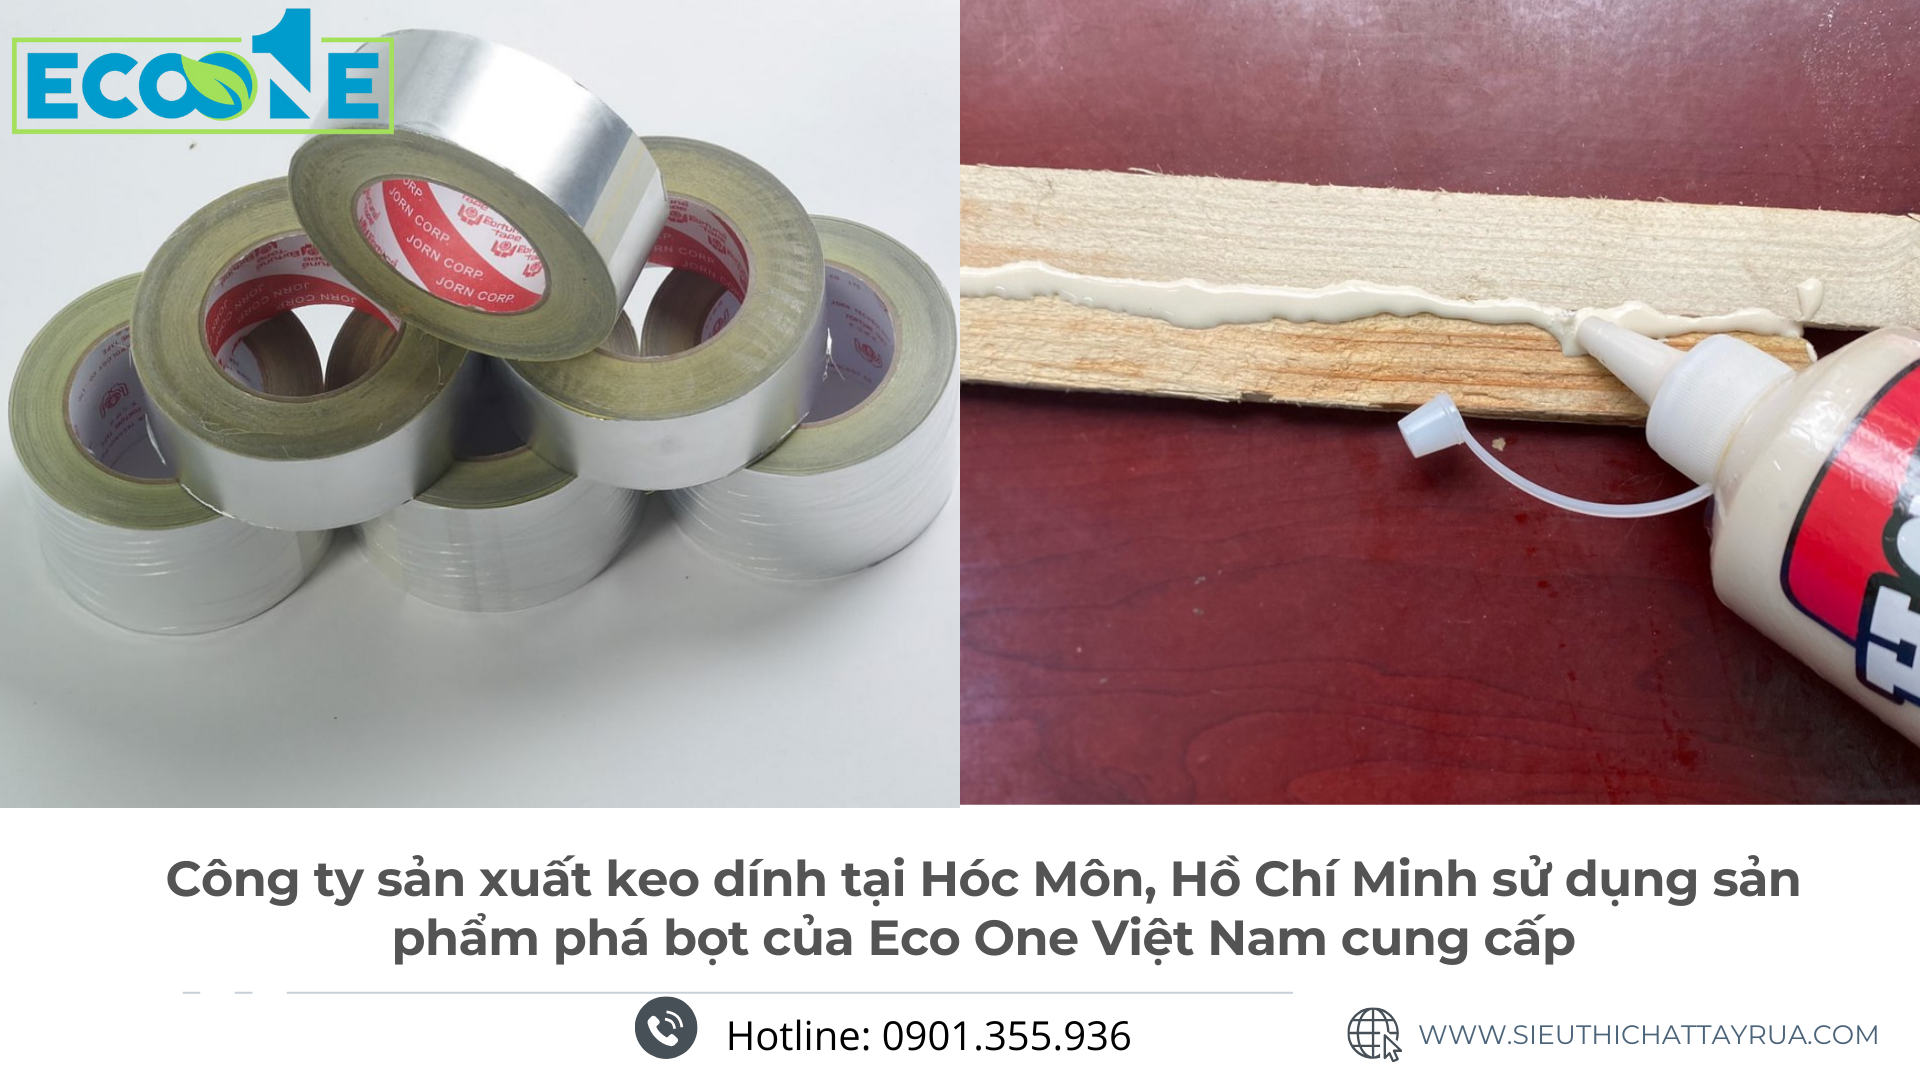 Công ty sản xuất keo dính tại Hóc Môn, Hồ Chí Minh sử dụng sản phẩm phá bọt của Eco One Việt Nam cung cấp